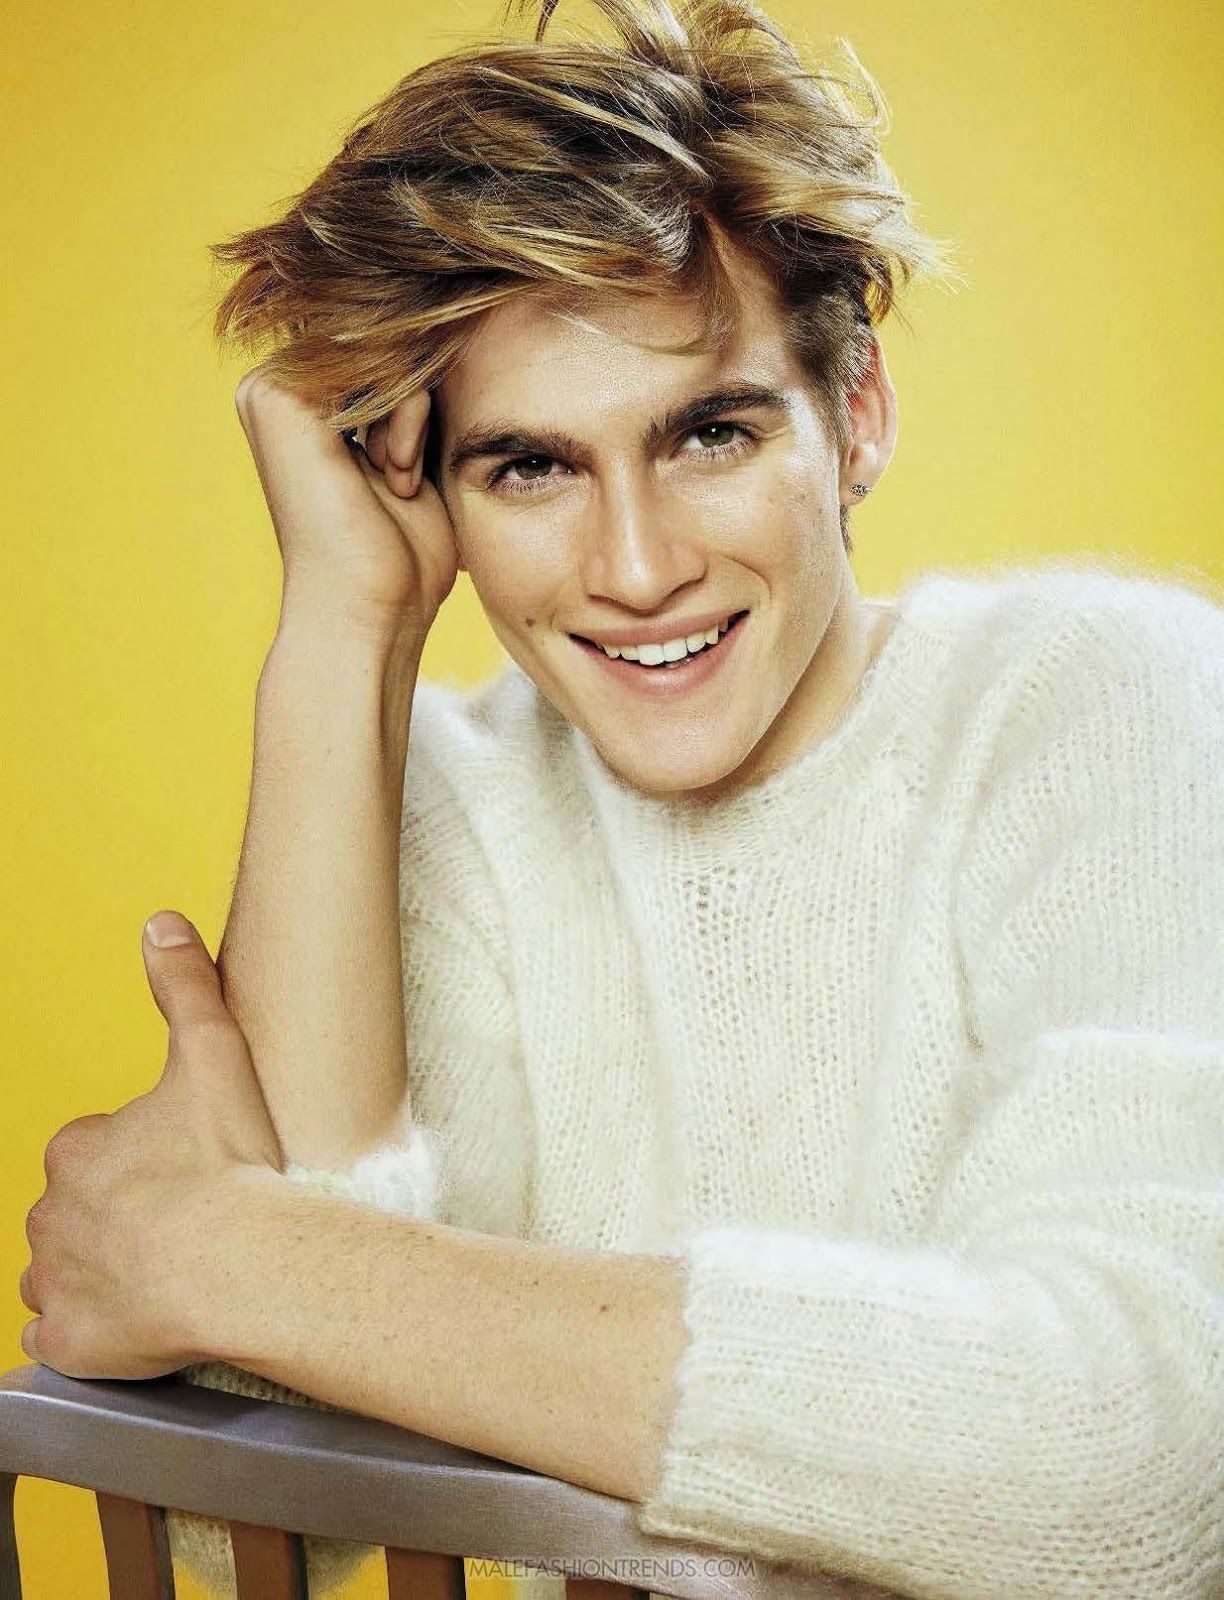 Presley Gerber- Male models with blonde hair